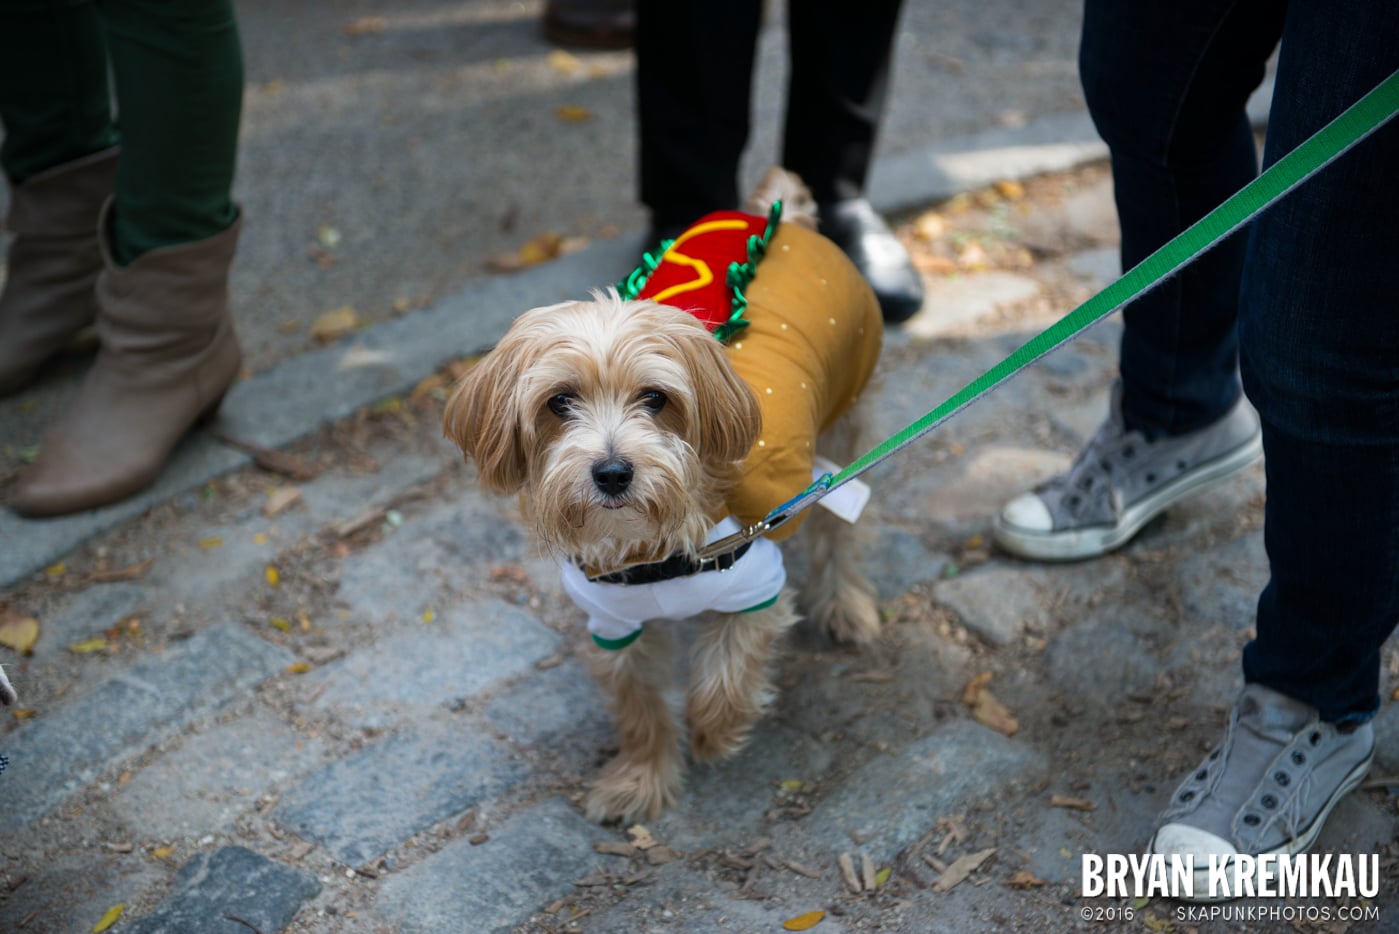 Tompkins Square Halloween Dog Parade 2013 @ Tompkins Square Park, NYC - 10.26.13 (38)